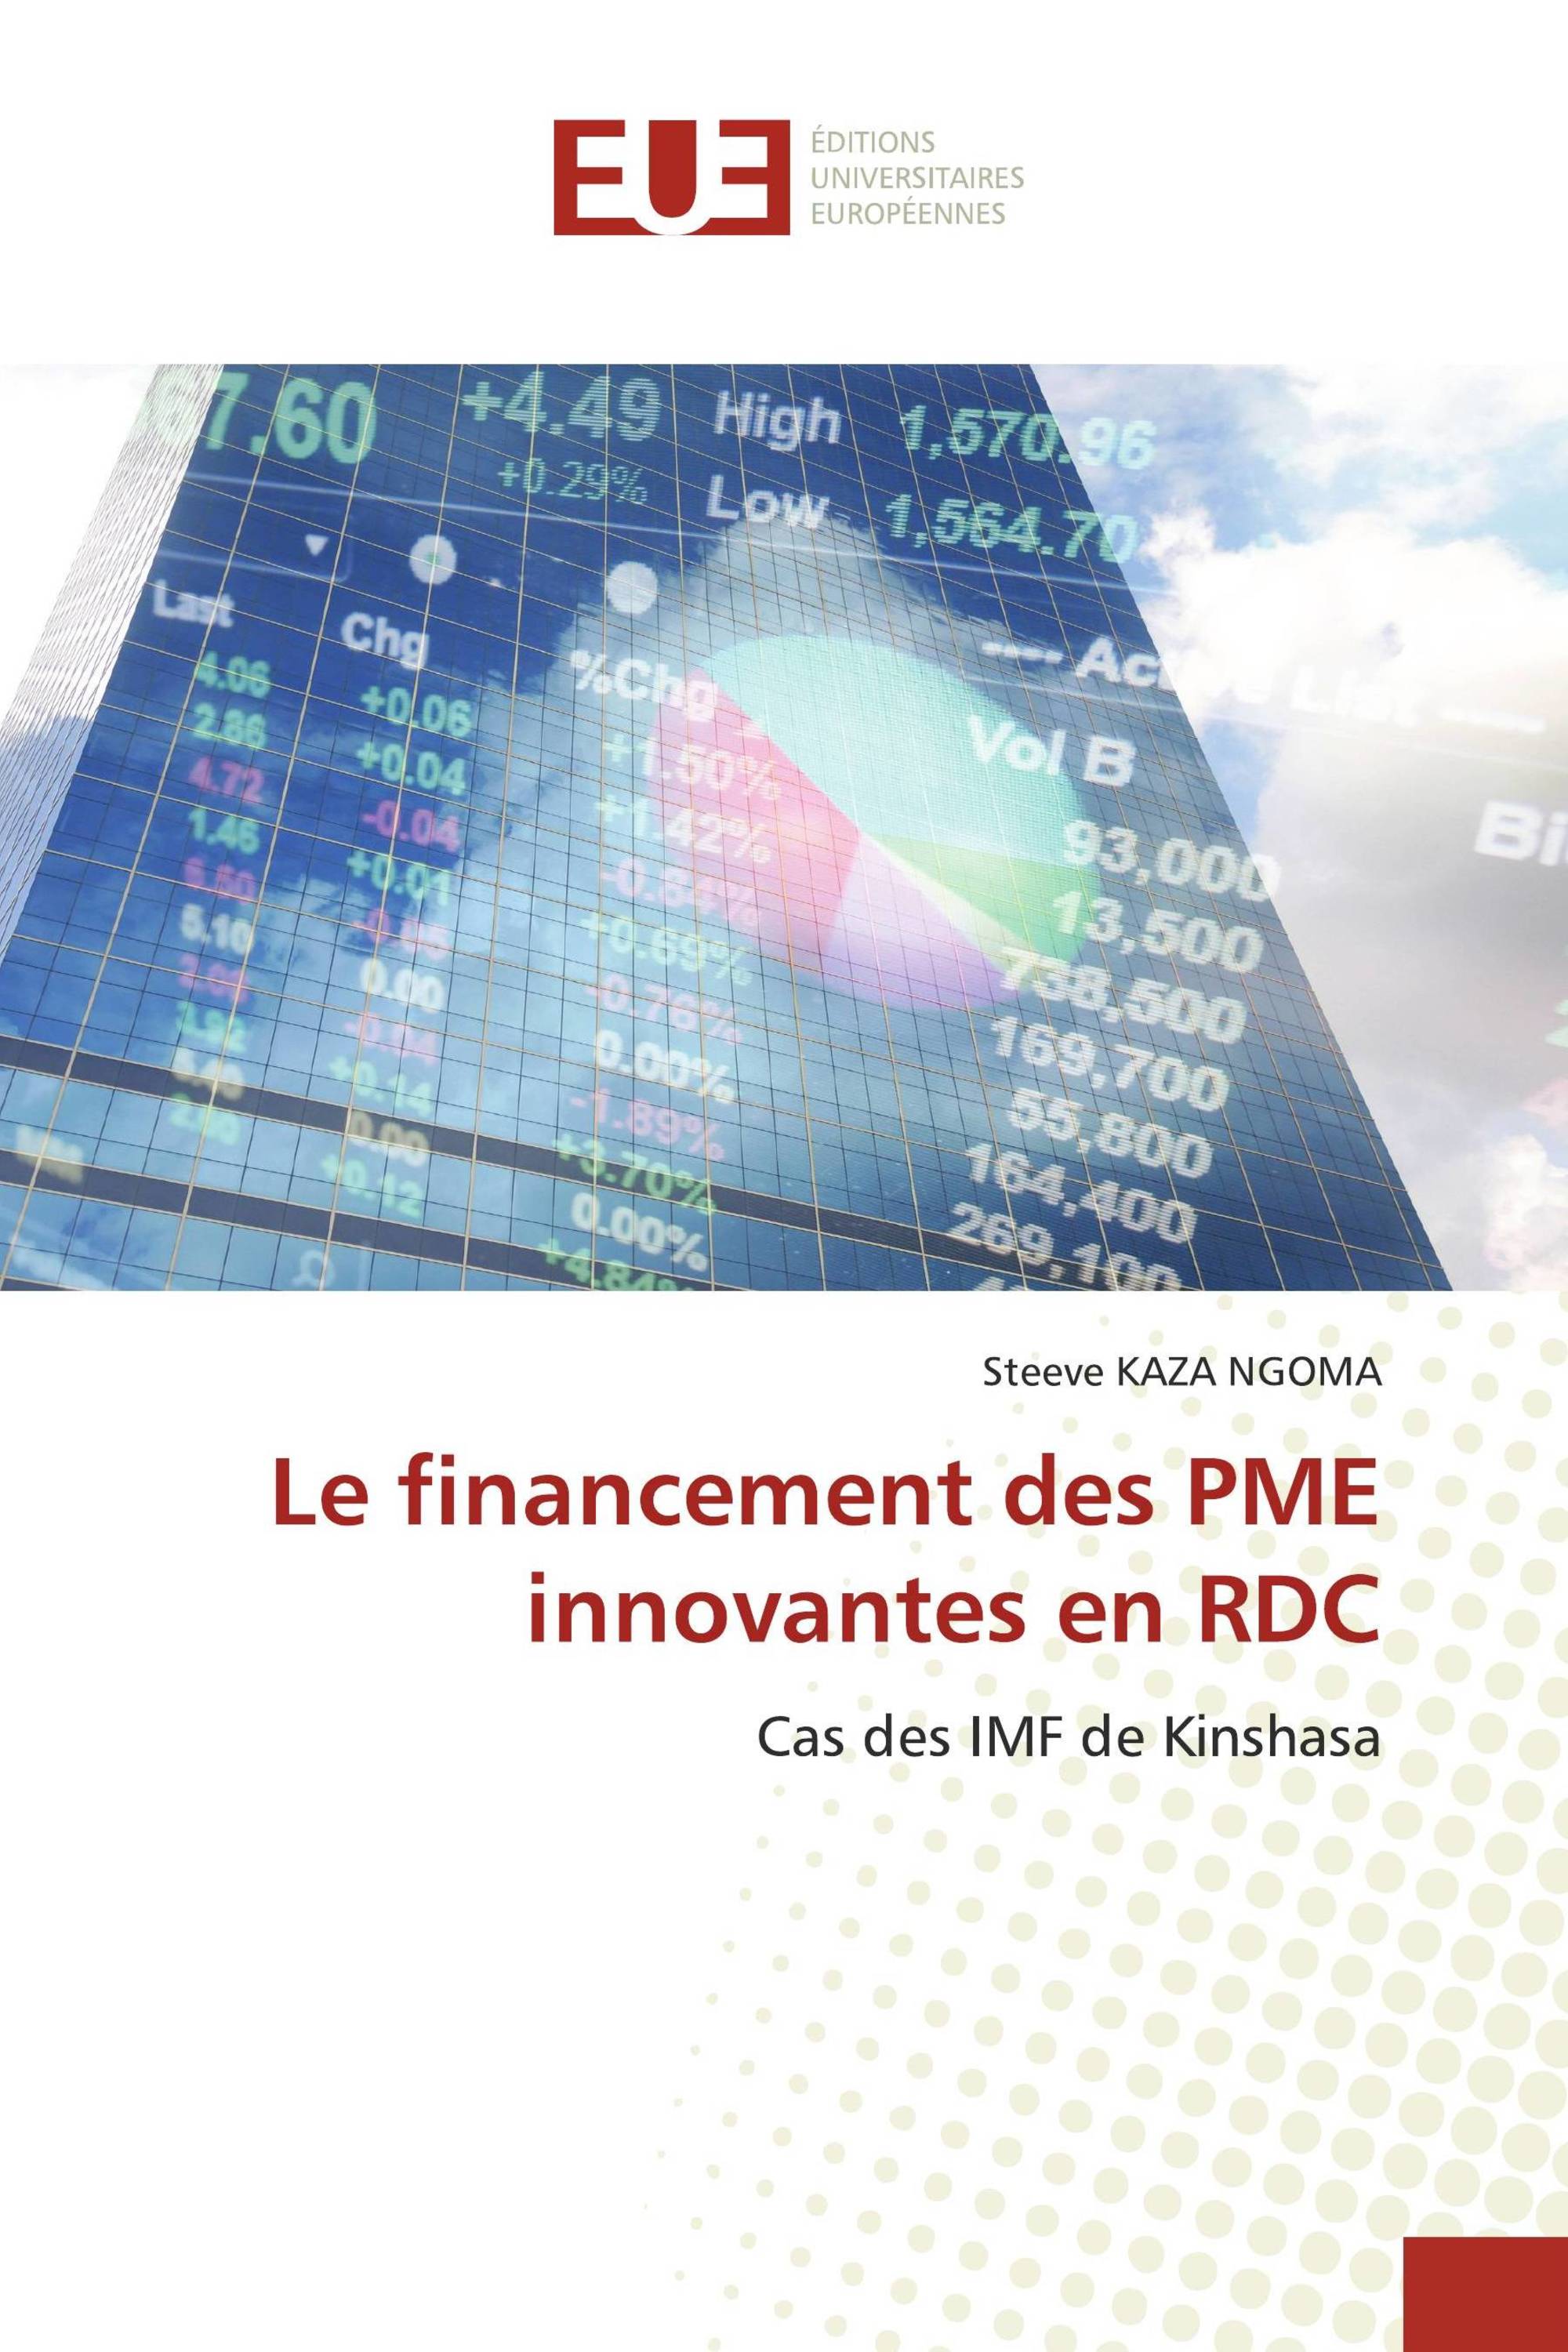 Le financement des PME innovantes en RDC